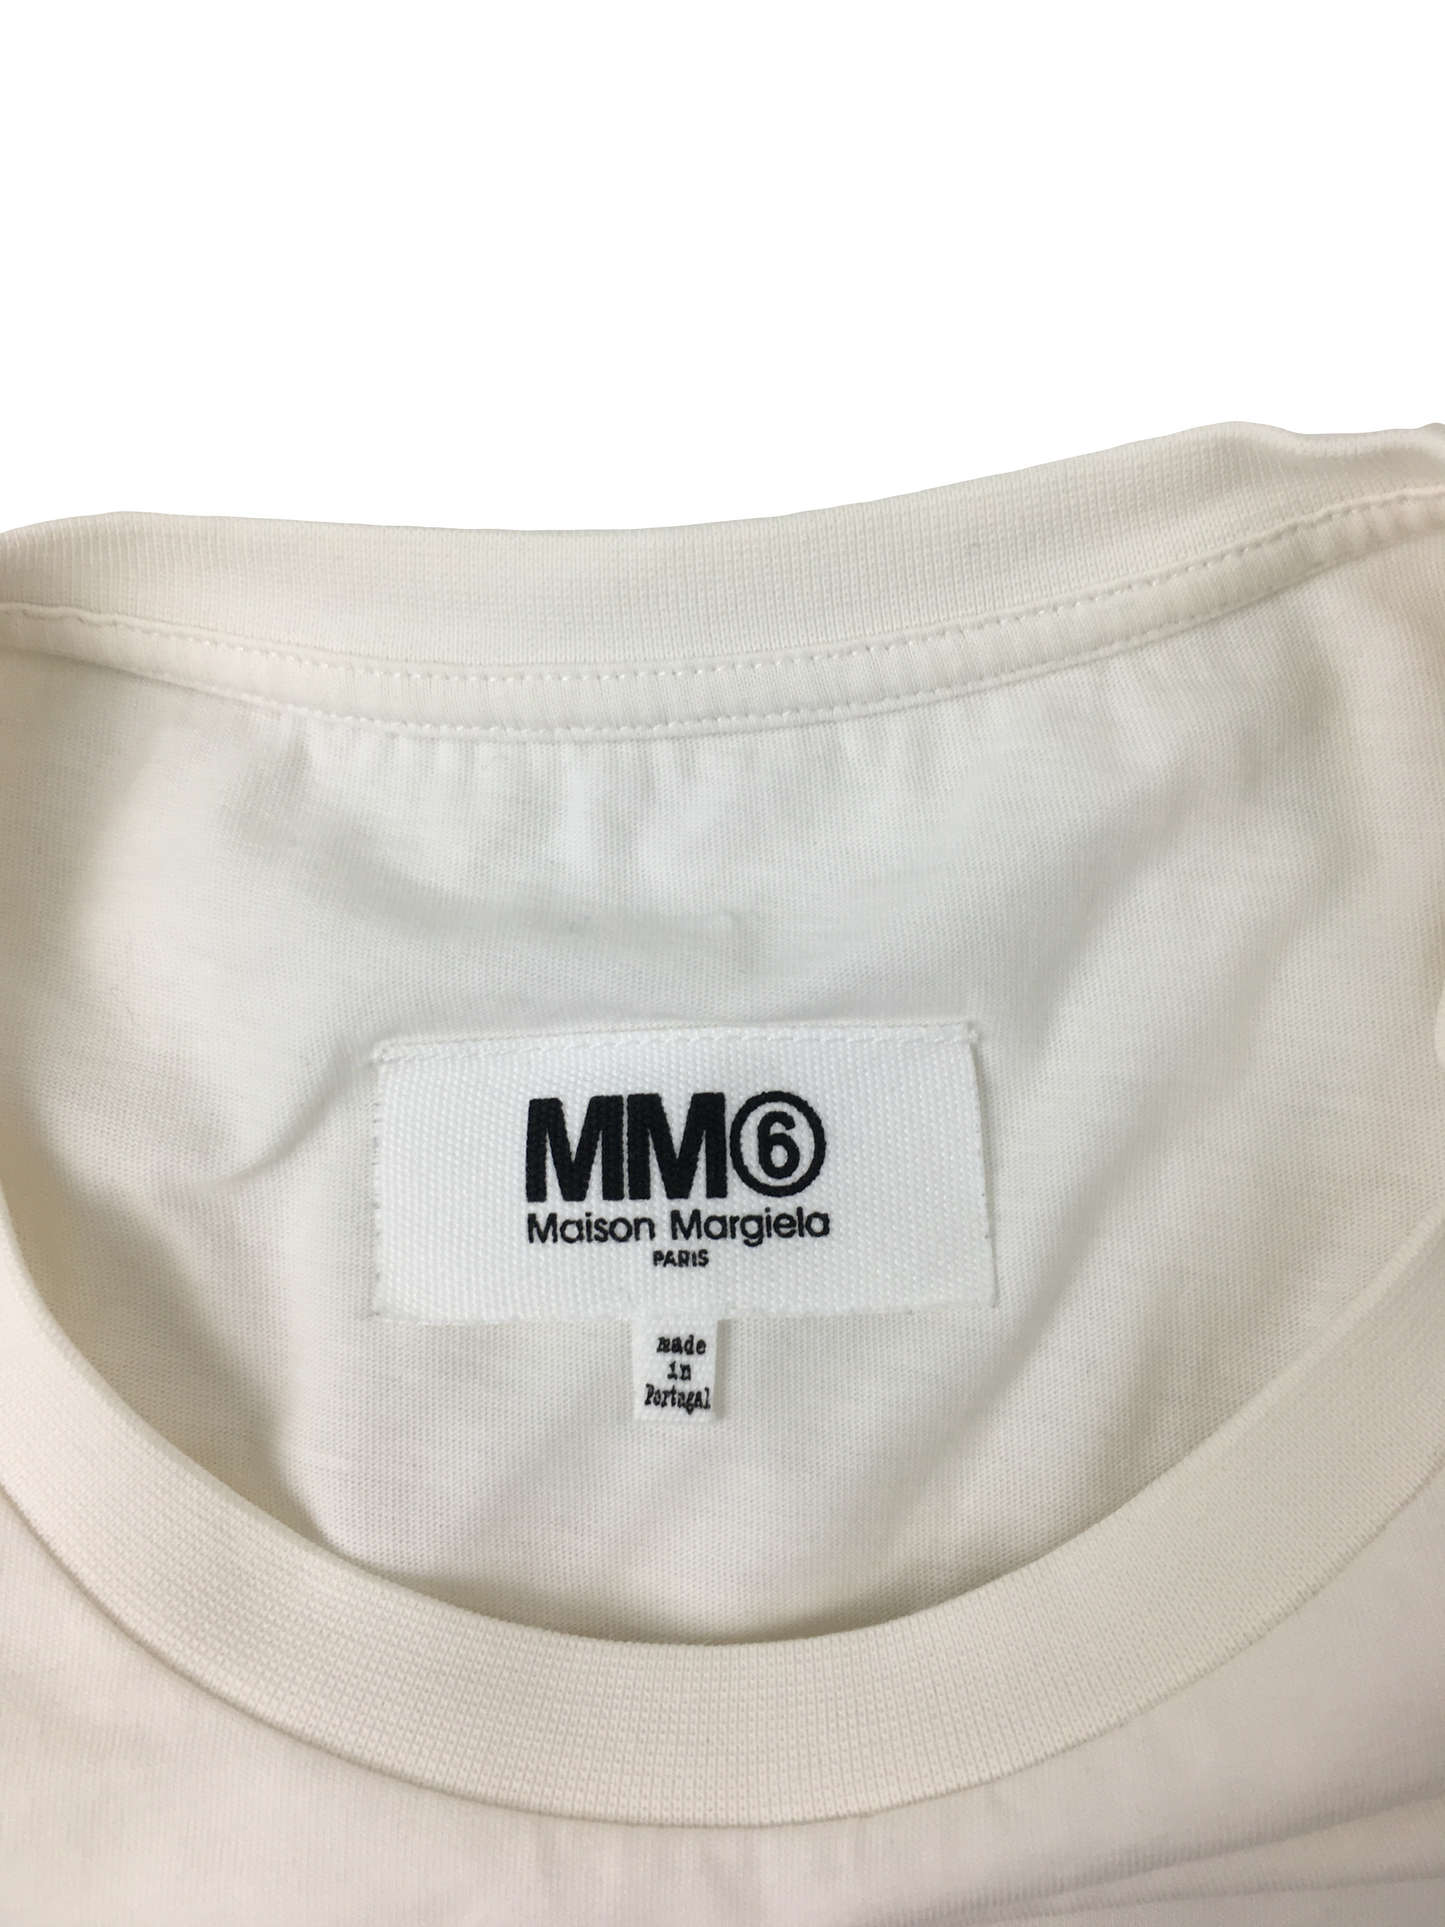 MM6 T-Shirt mit Print / M